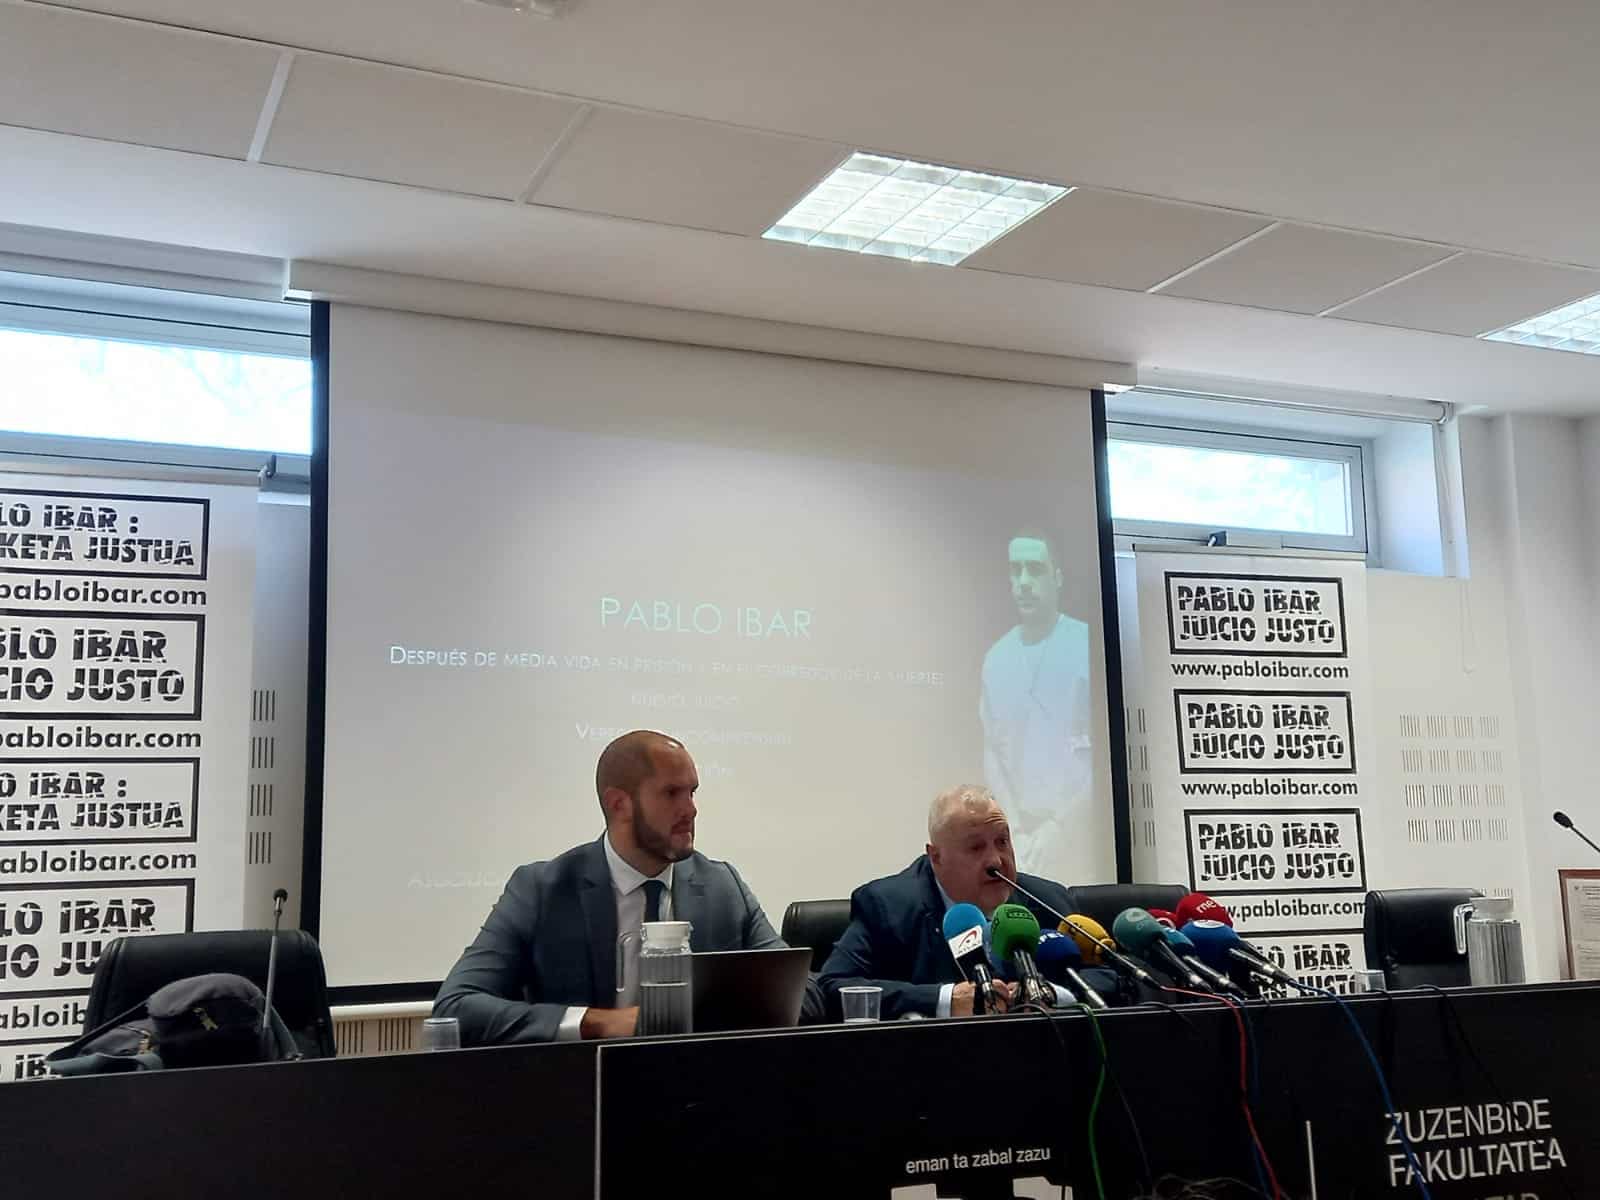 Ibar4 - La solidaridad vasca, clave para que Pablo Ibar tenga un juicio justo